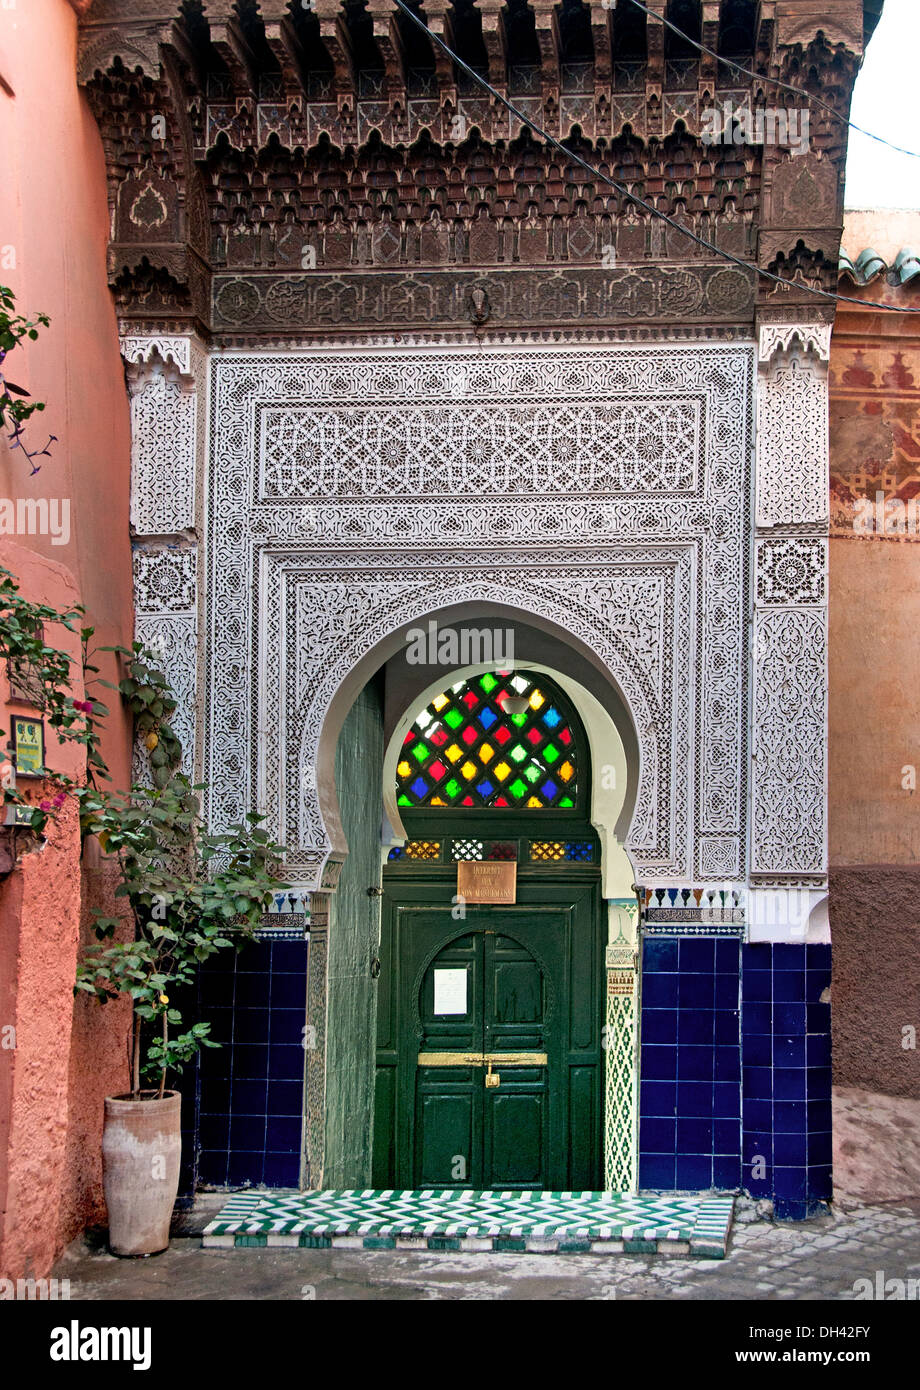 Interdit aux non Musulmans ( vieta i non musulmani ) piccola moschea nel centro della medina di Marrakech marocco Foto Stock